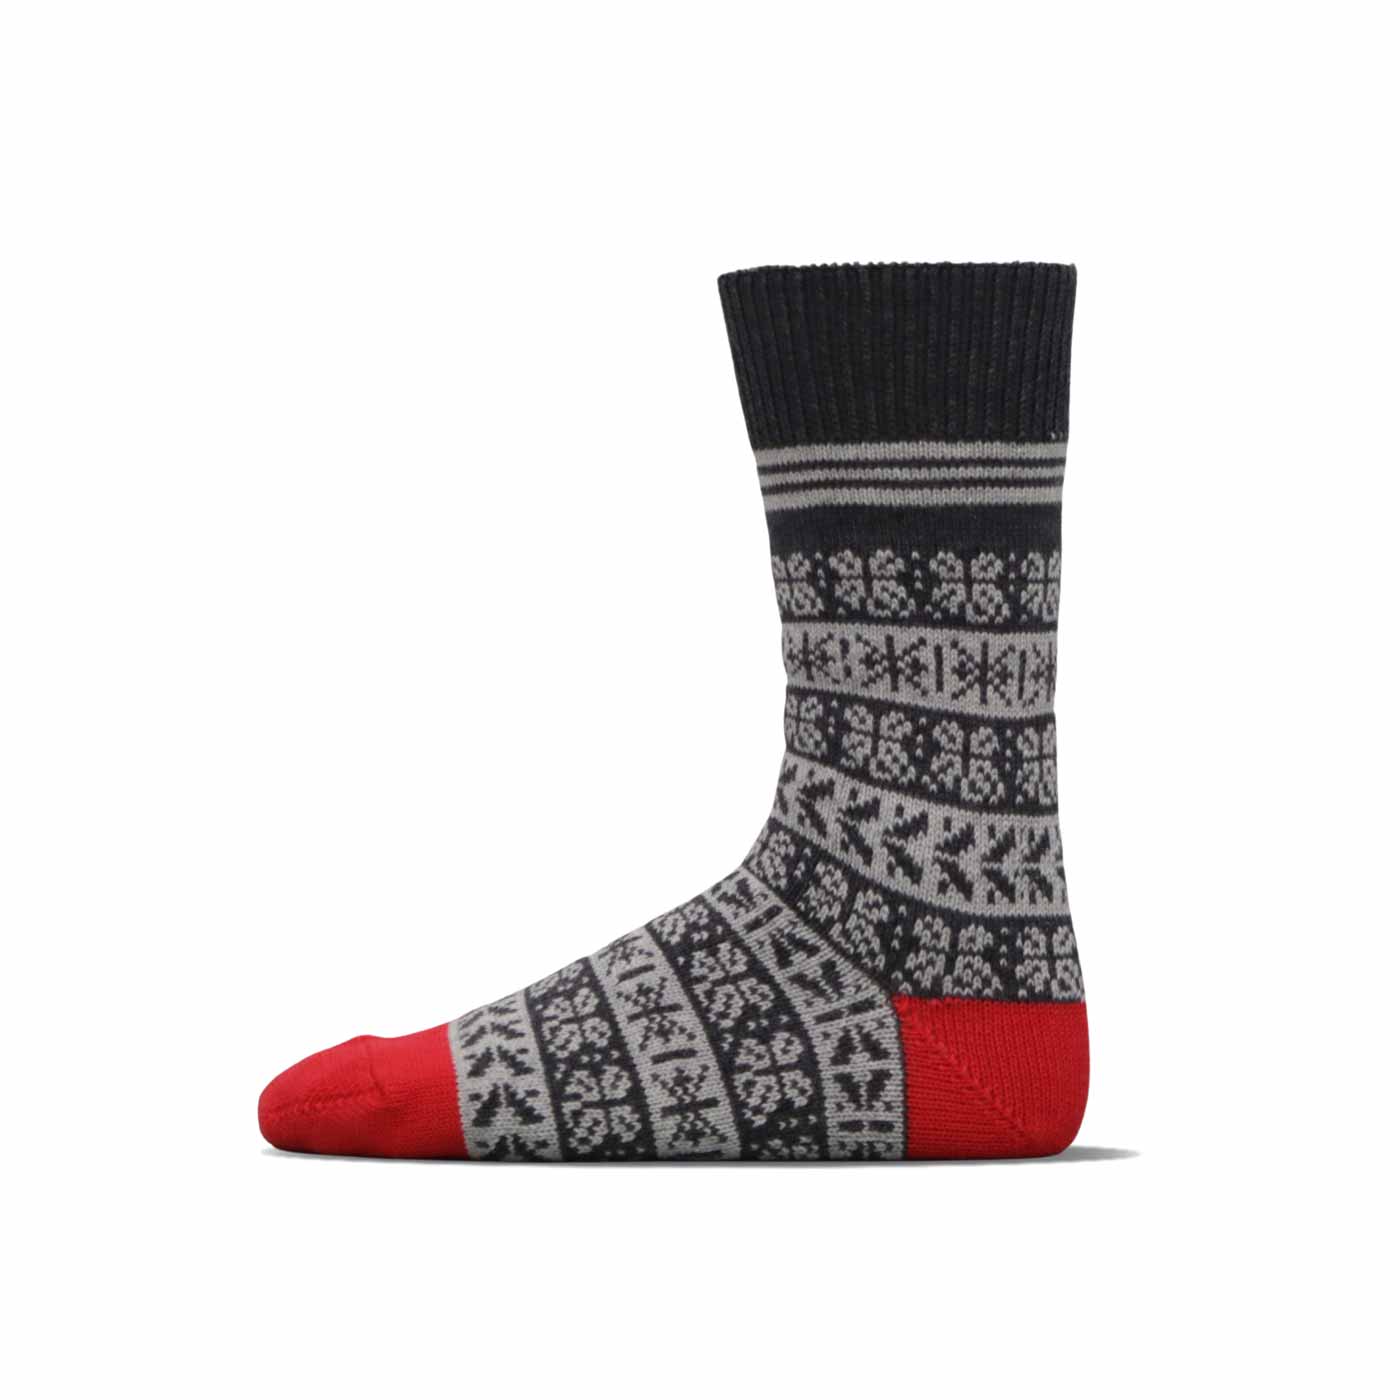 Jacquard Socks - Clover